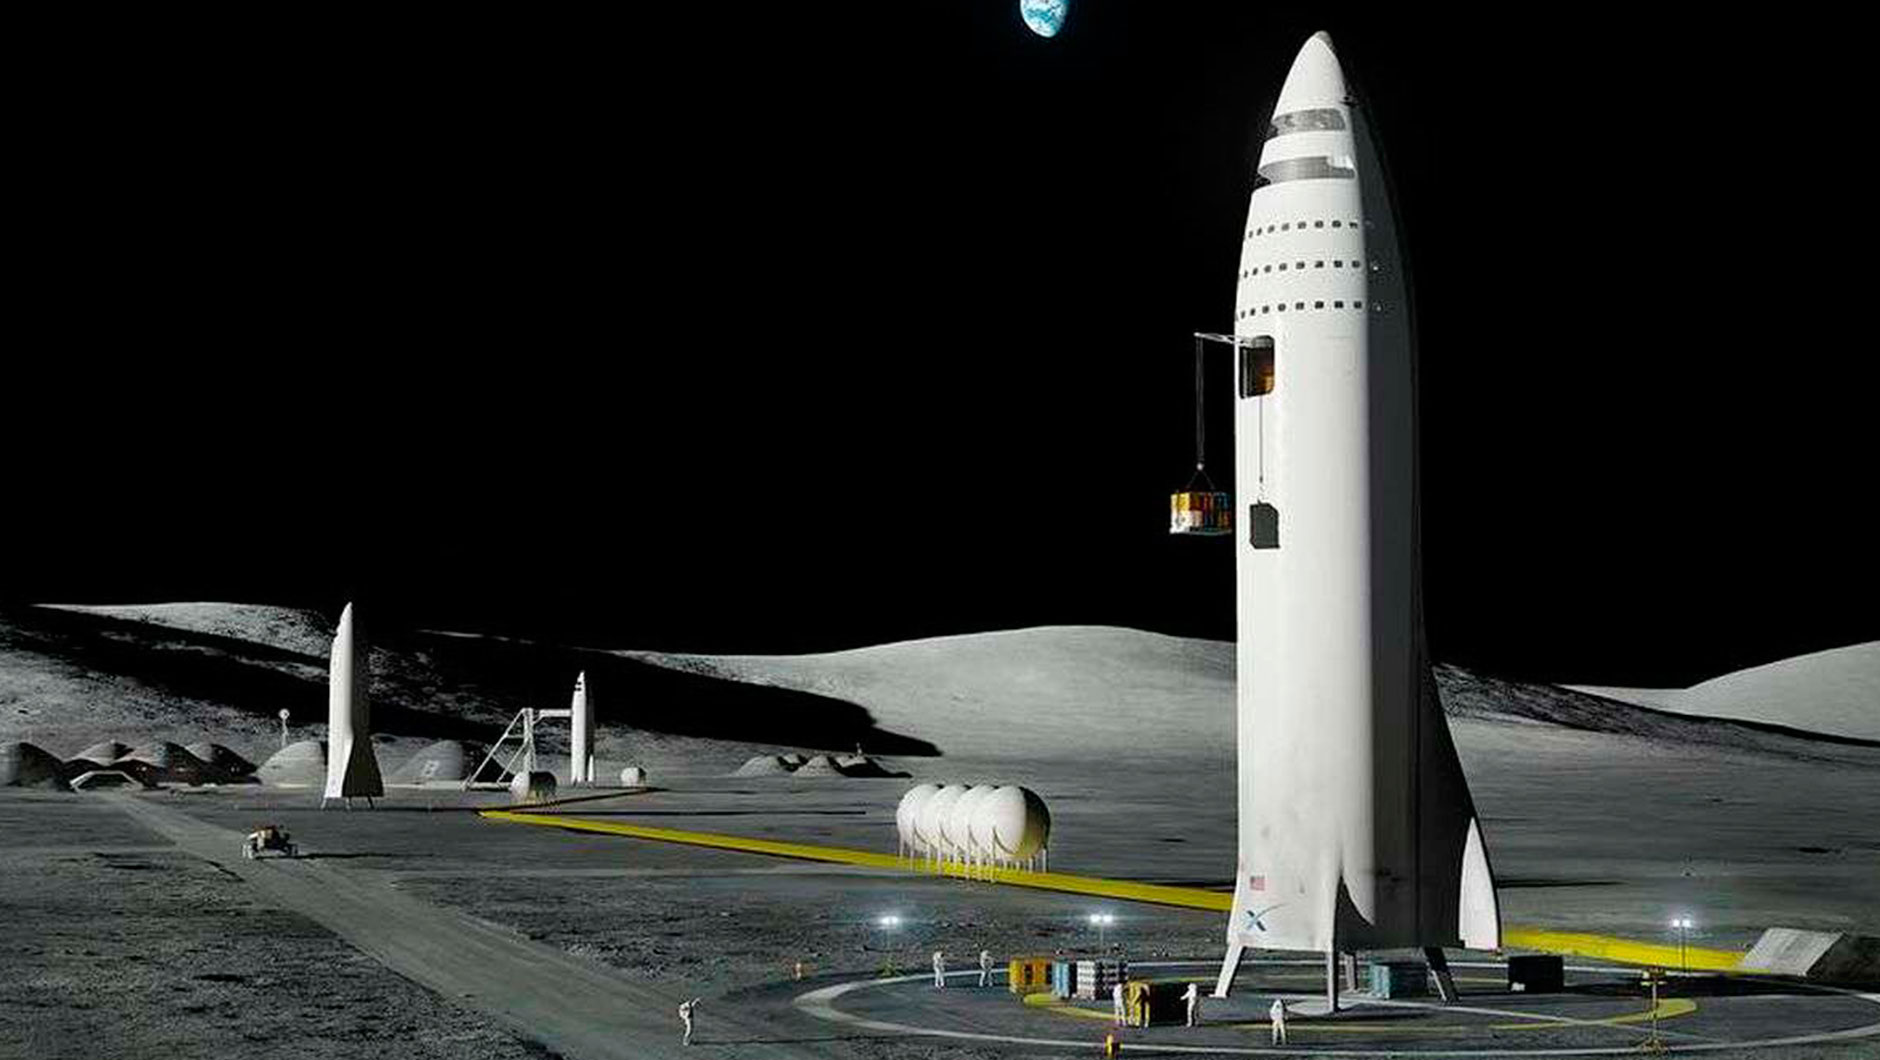 Один из самых известных инженеров-конструкторов современности Илон Маск мечтает о том, что полётов людей в космос станет настолько обычным делом, как поход в магазин. Именно так, по представлениям изобретателя, будет выглядеть первая база землян на Луне